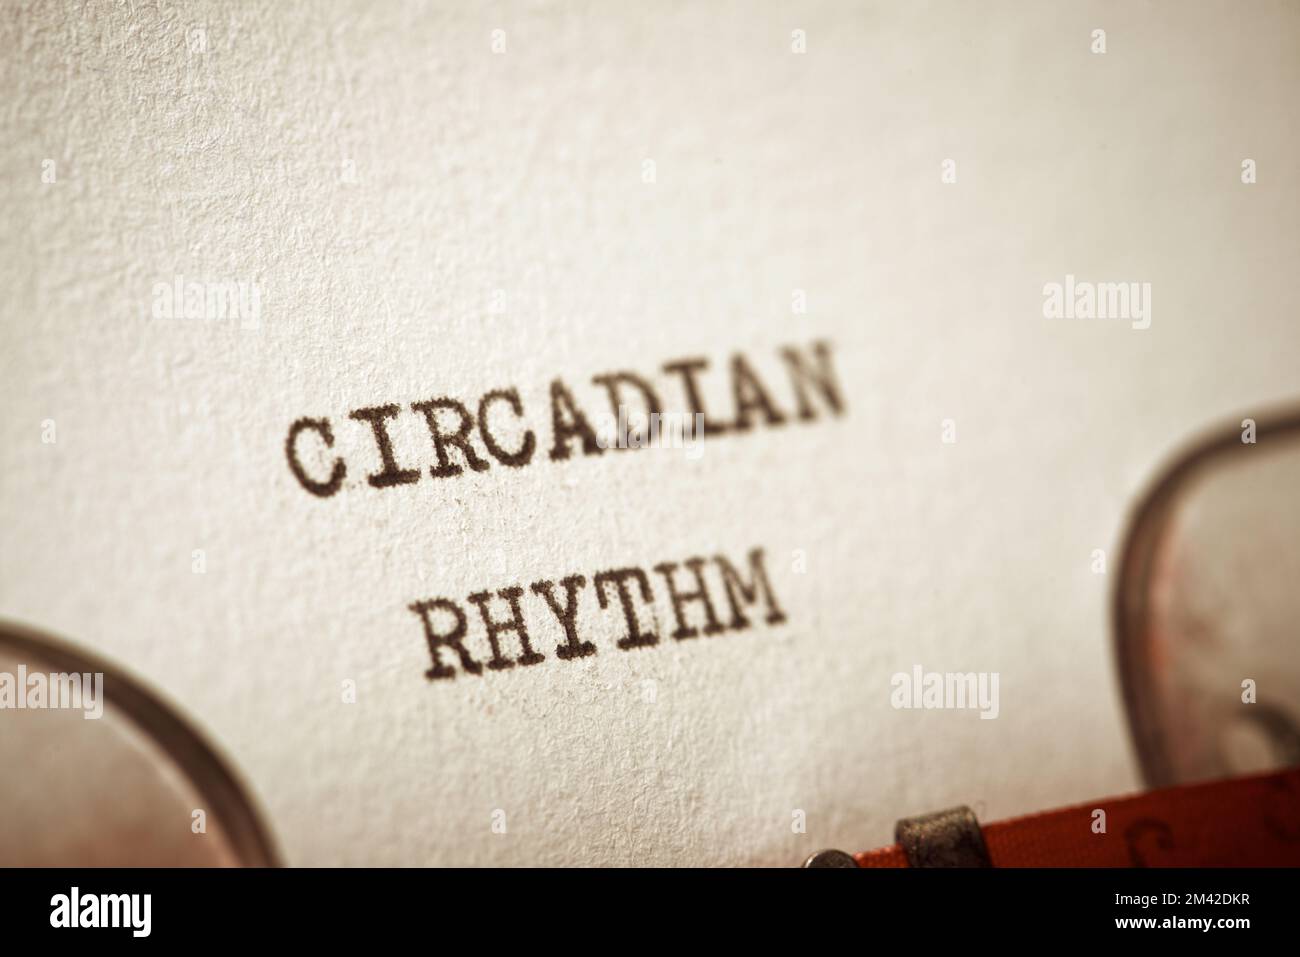 Zirkadianer Rhythmusausdruck mit einer Schreibmaschine. Stockfoto